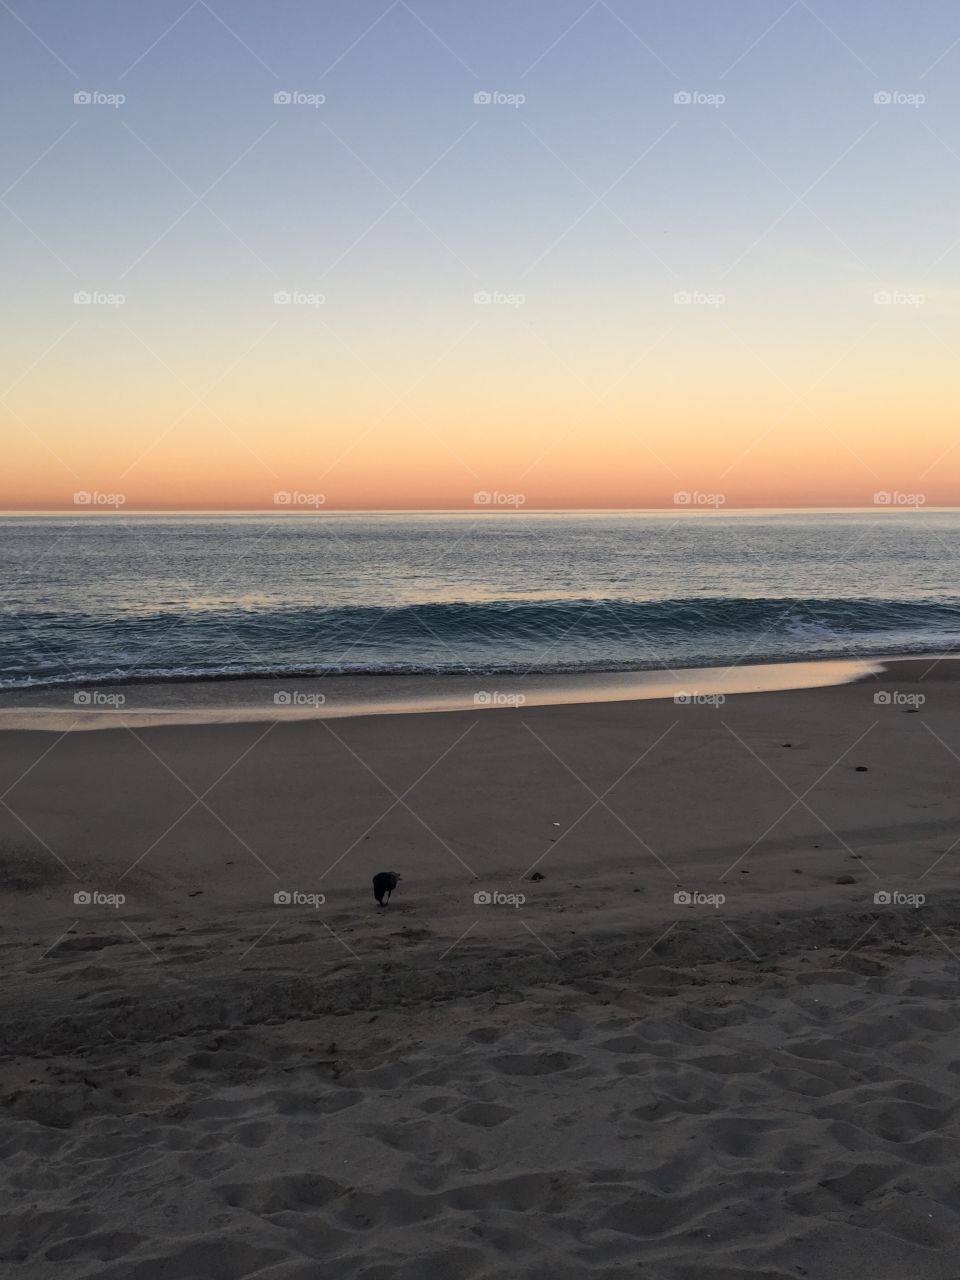 5:45am Sunrise over the Beach